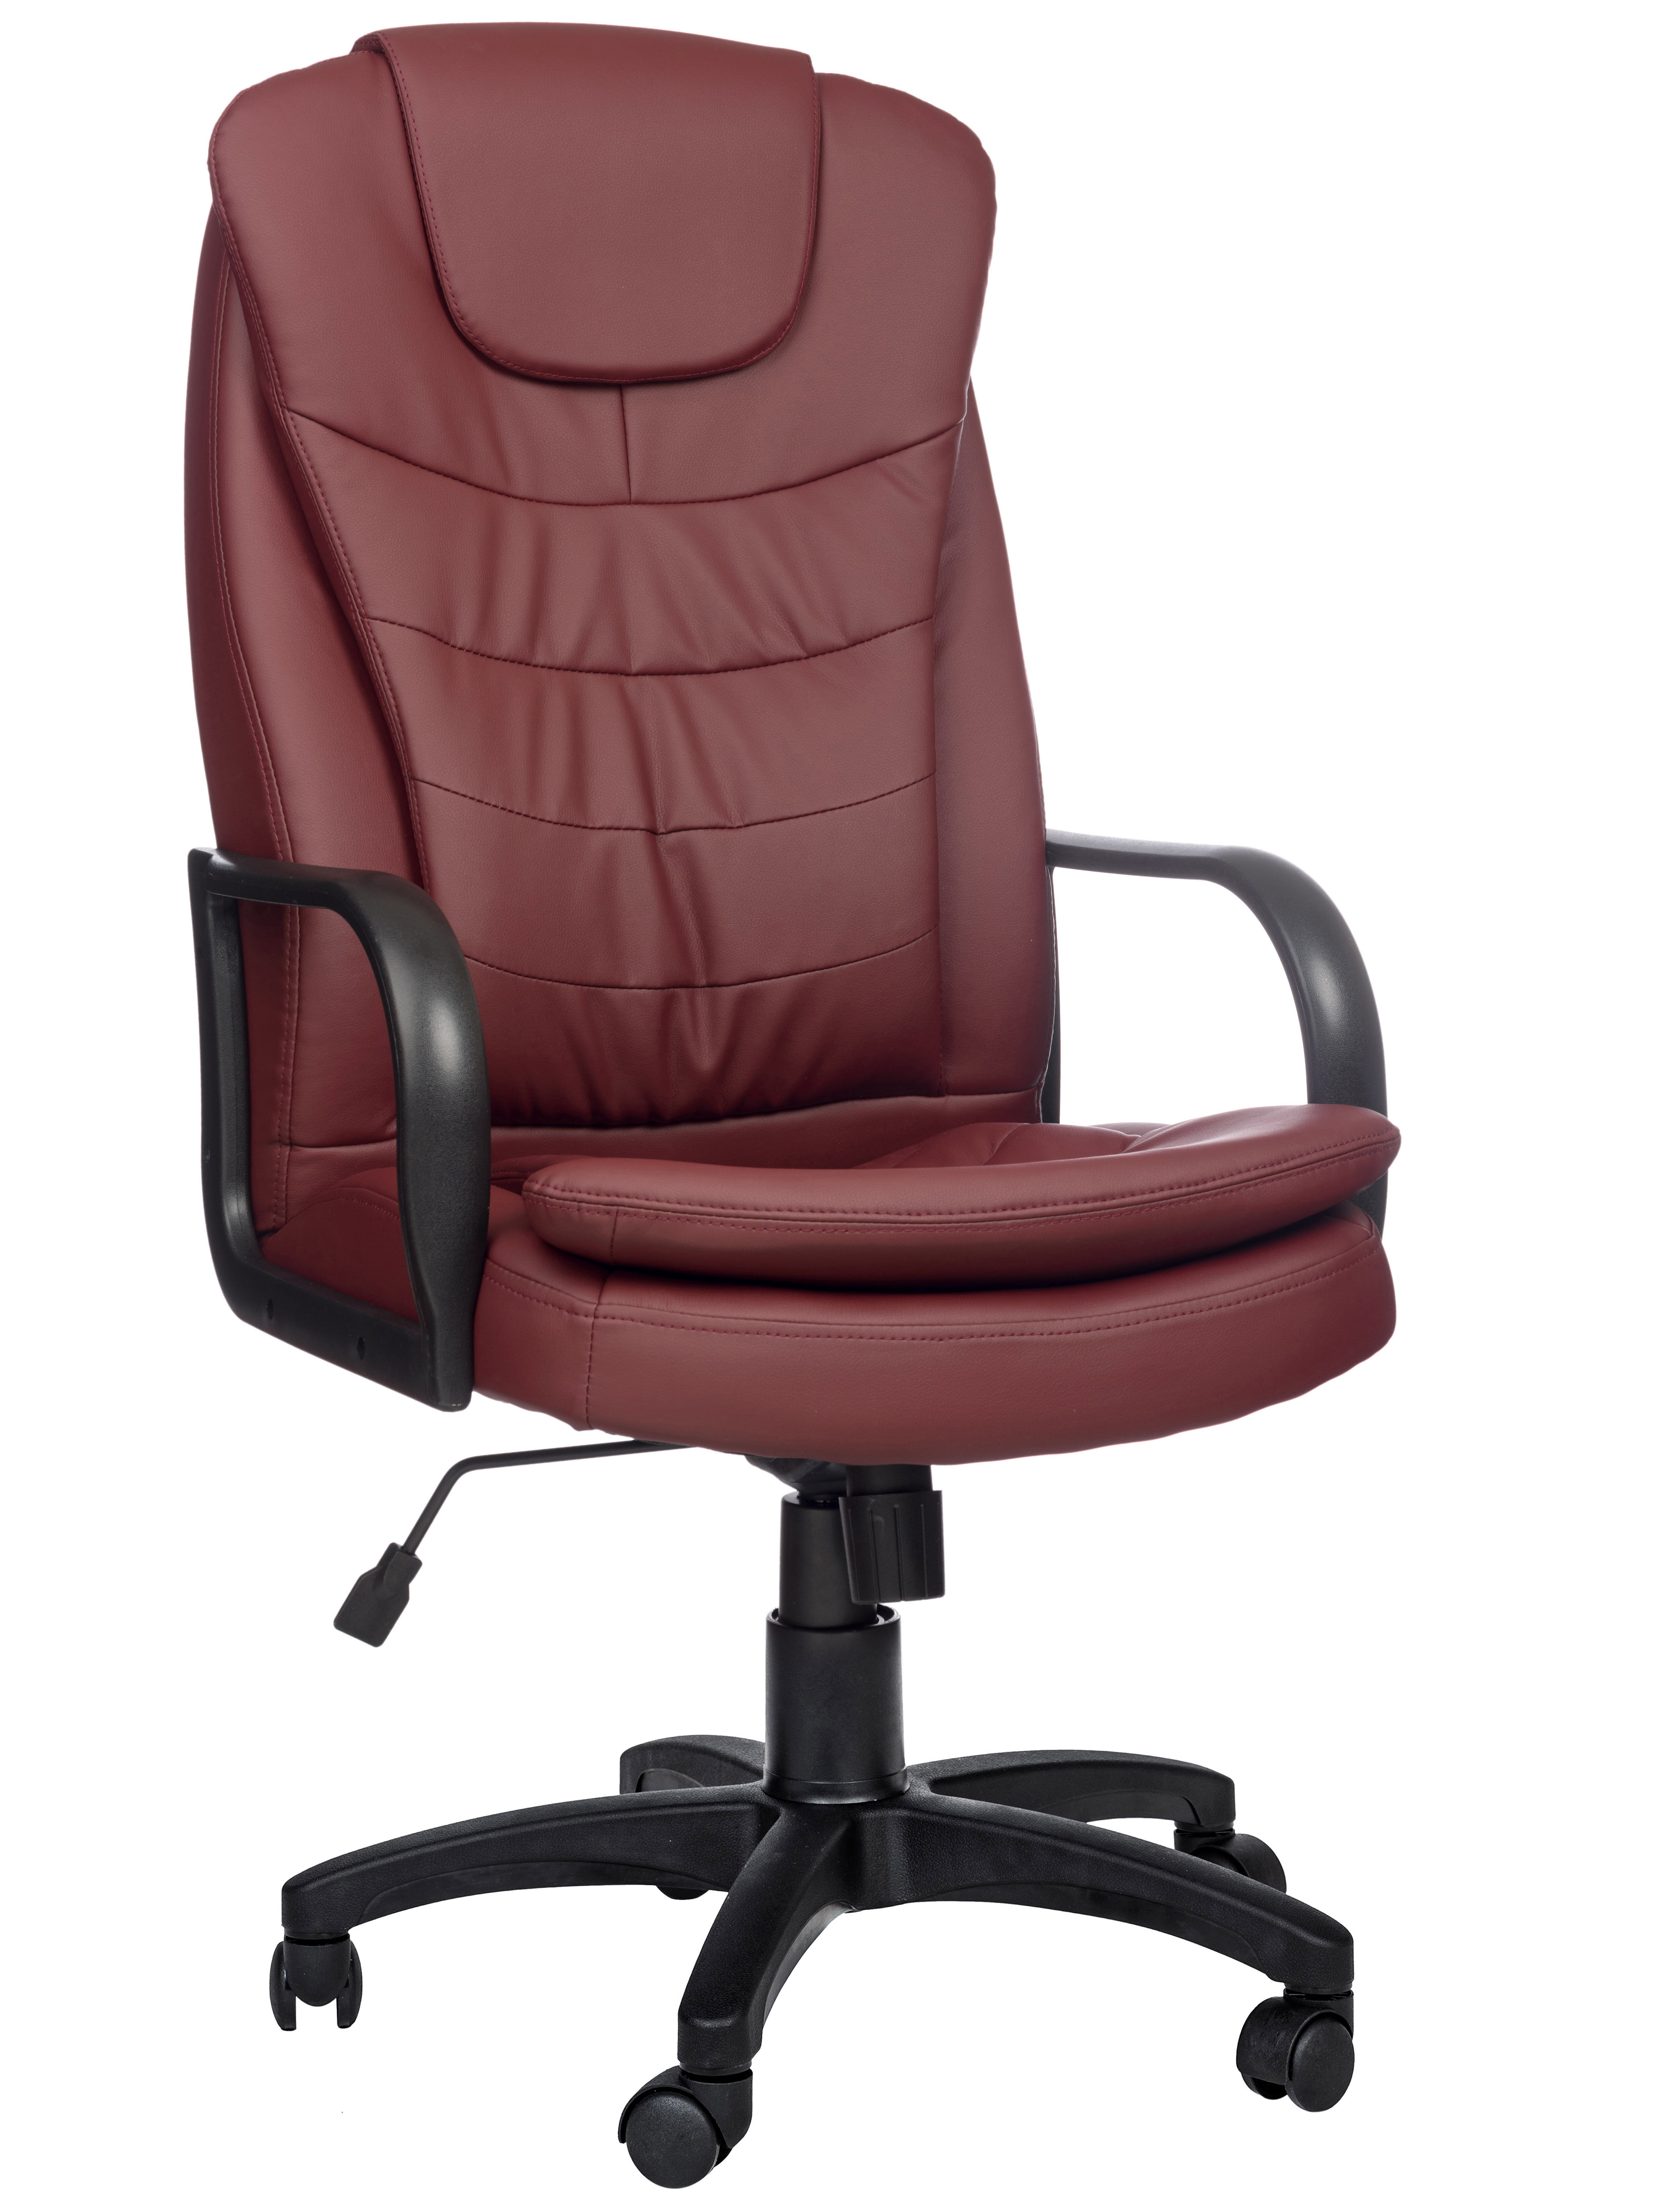 Компьютерное офисное кресло РосКресла Patrick-1 на колесиках, обивка: искусственная кожа, цвет: бордовый